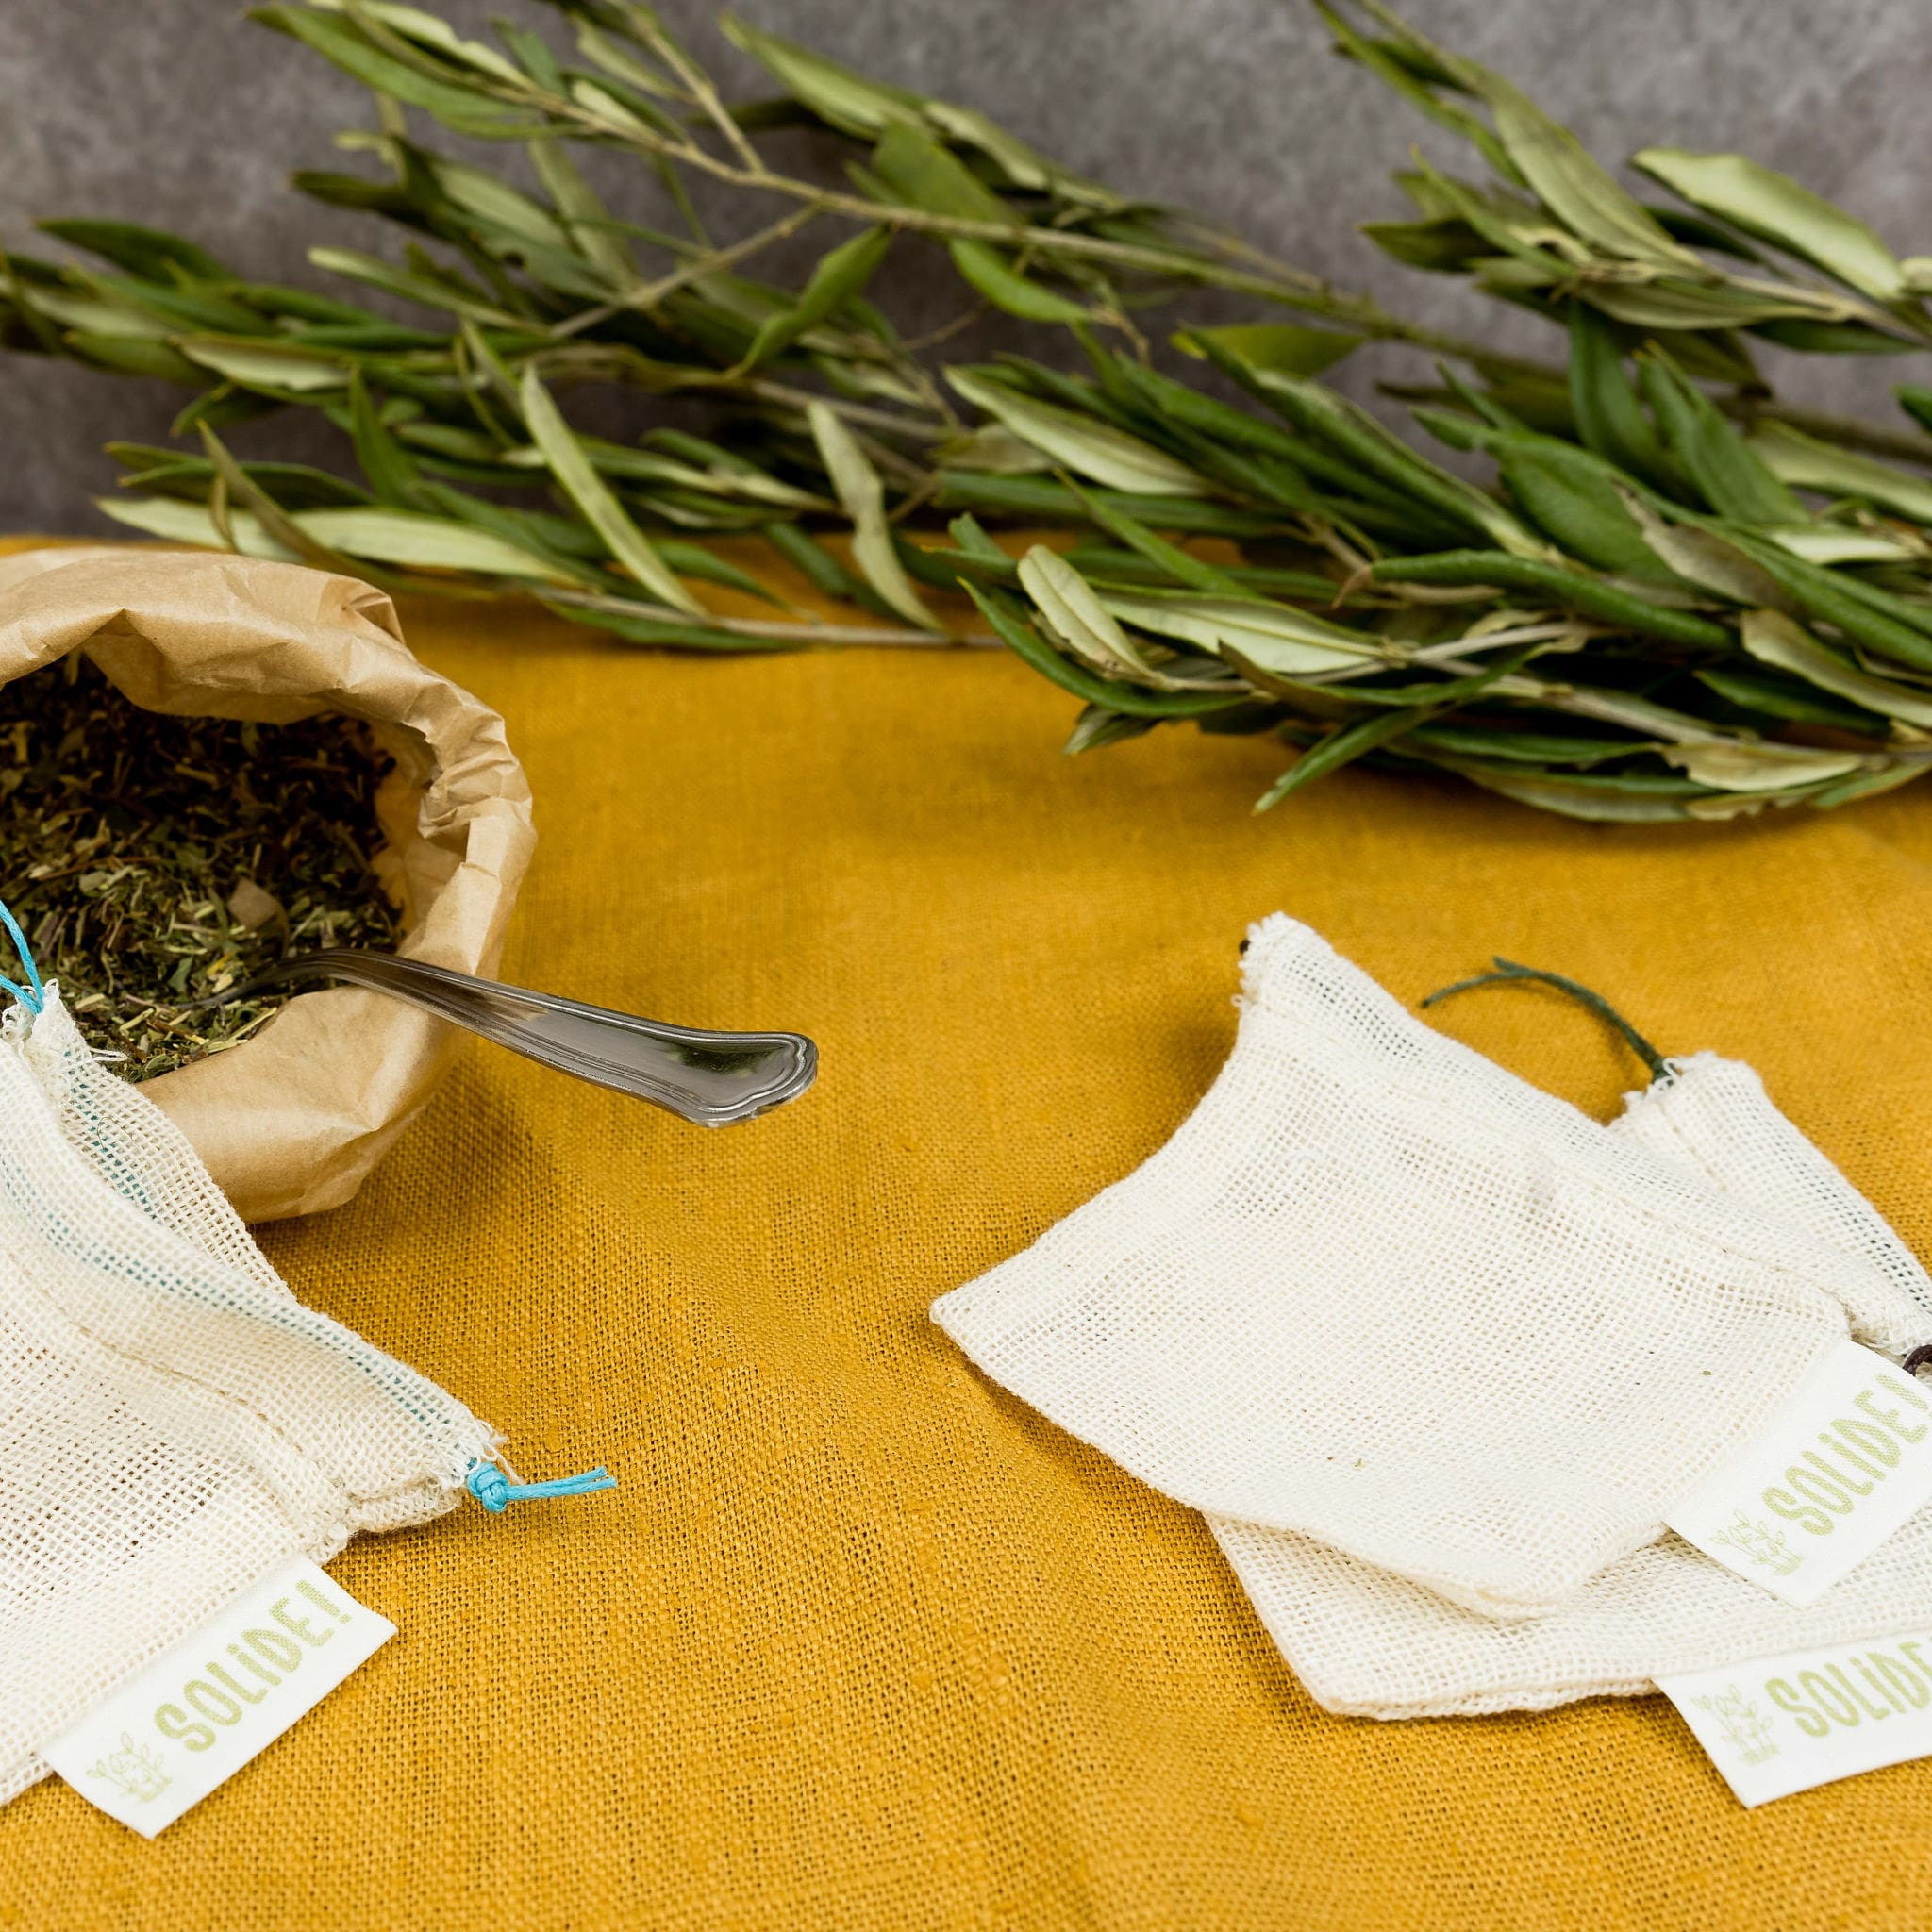 Sachet de thé réutilisable  Livraison offerte à partir de 50€ déchat